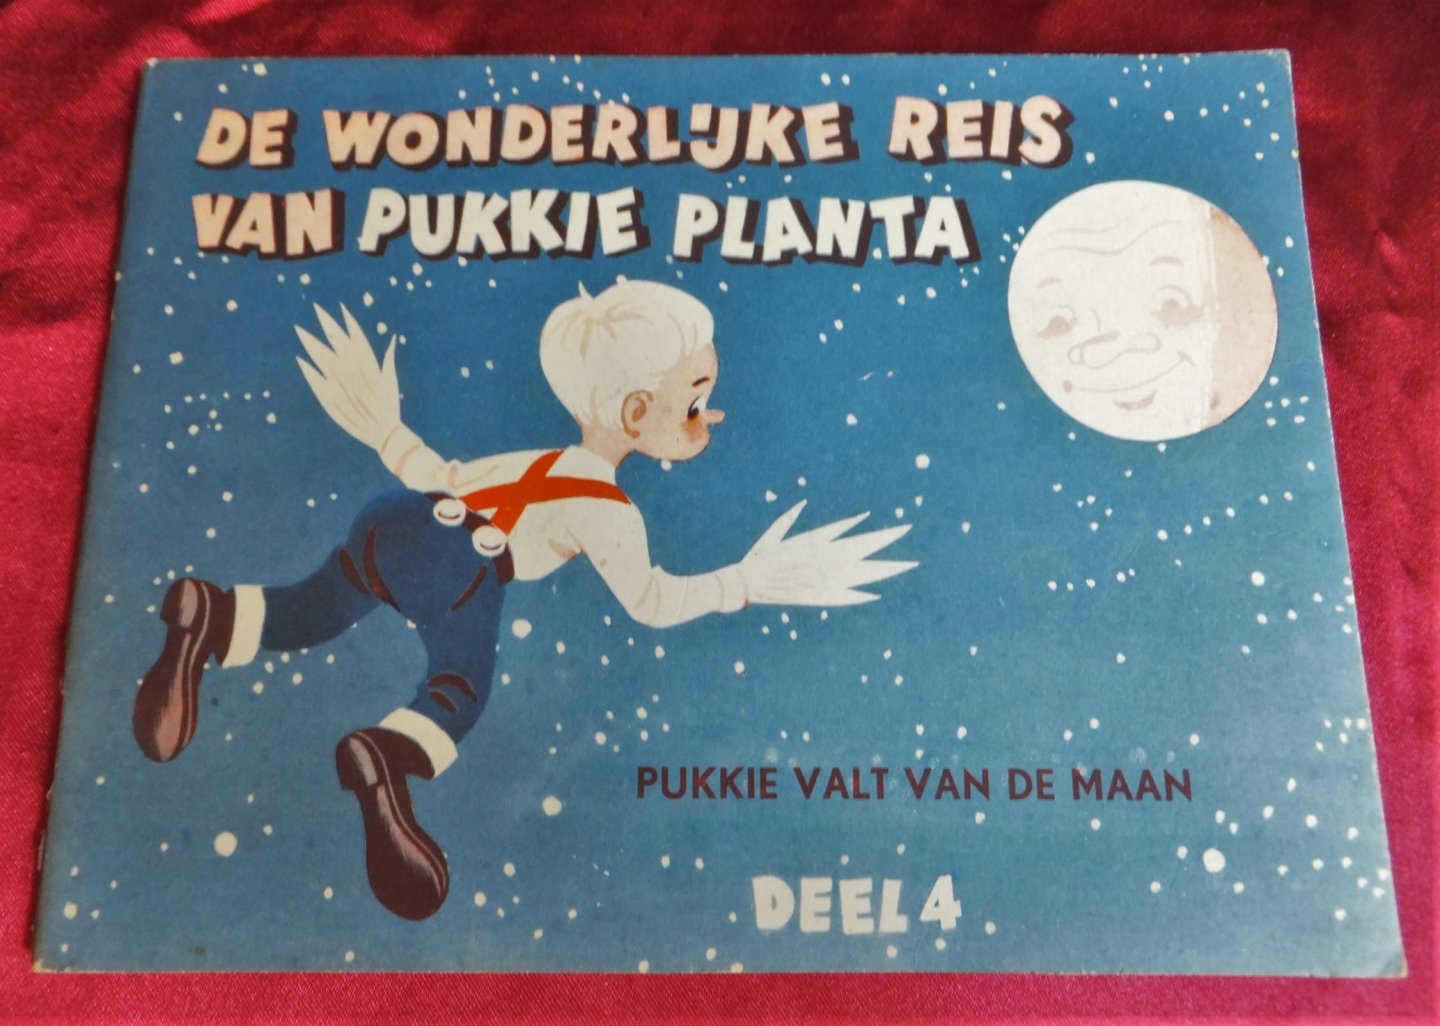 Johan Veeninga en van wonderplaatjes voorzien door Joop Geesink's Filmstudio Dollywood - De wonderlijke reis van Pukkie Planta 1 tot 8 delen